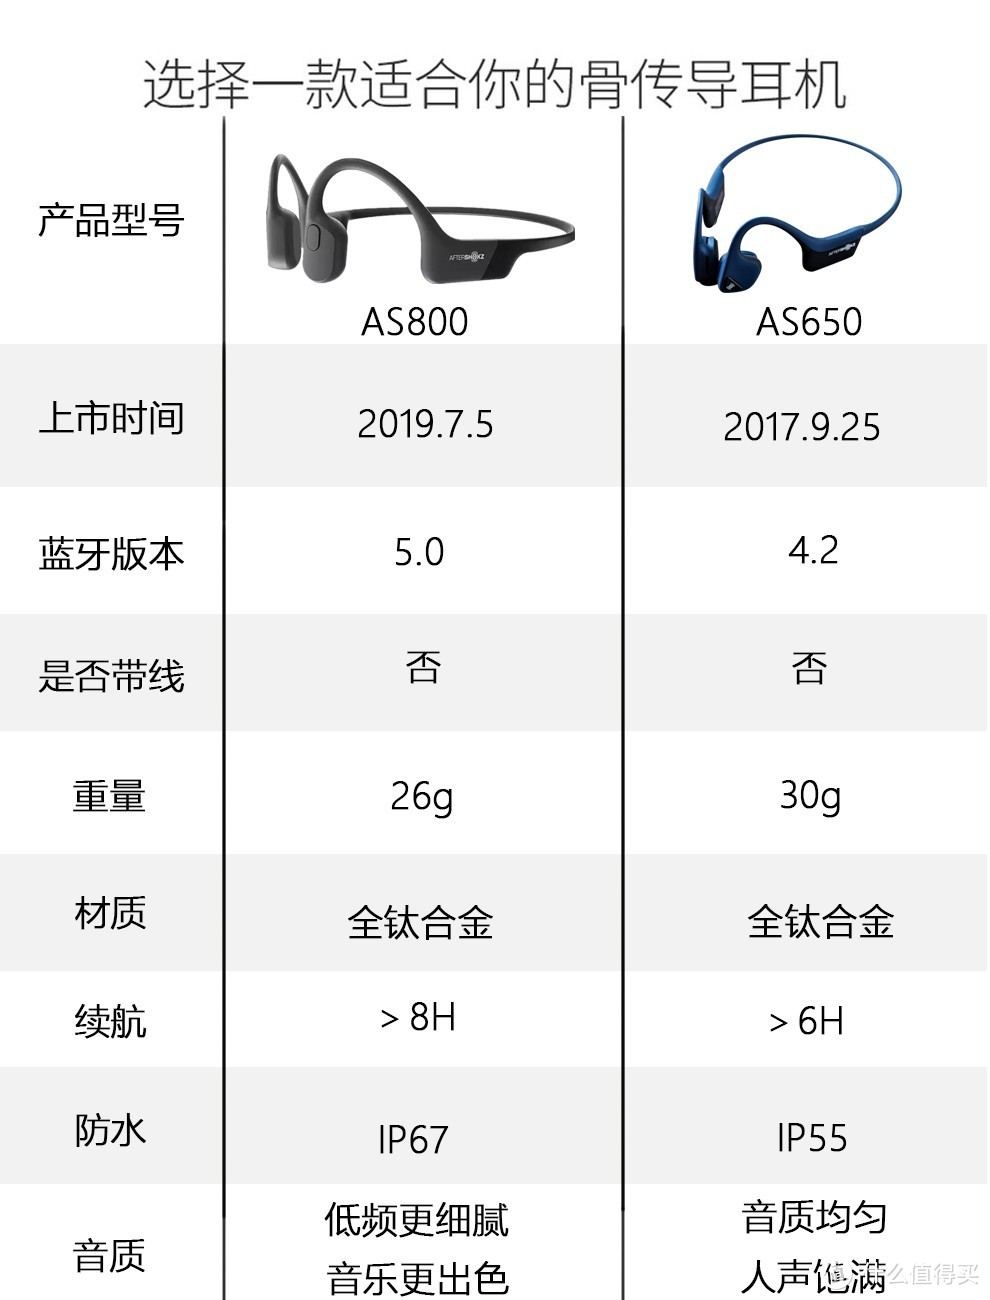 一副有温度的耳机 韶音AS800 以及与SONY传统耳机的对比